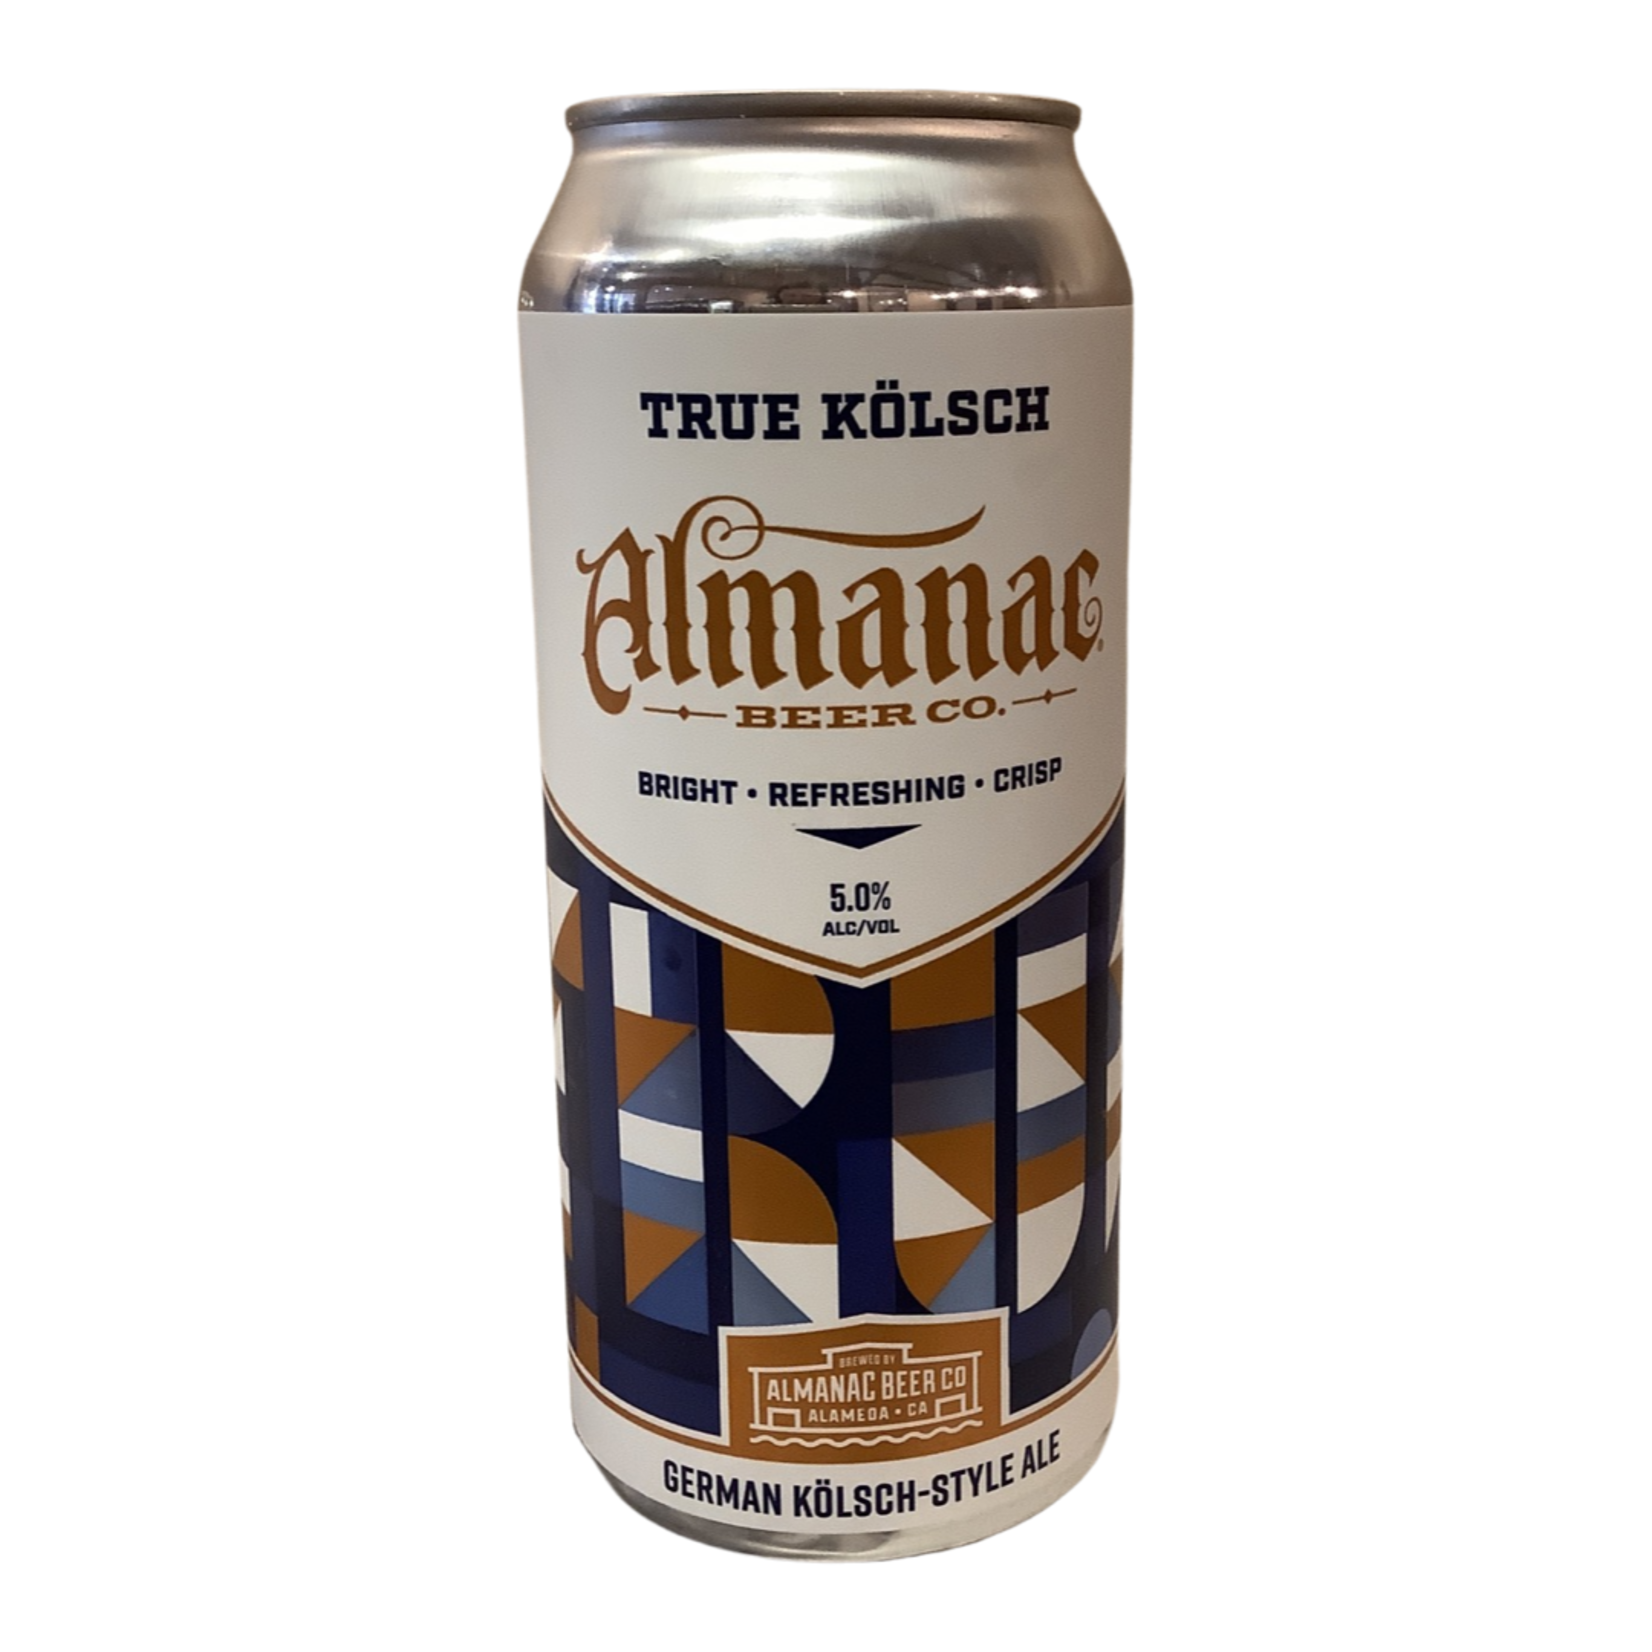 Almanac Beer Co "True Kölsch" German Kölsch-Style Ale 16 OZ, Alameda CA